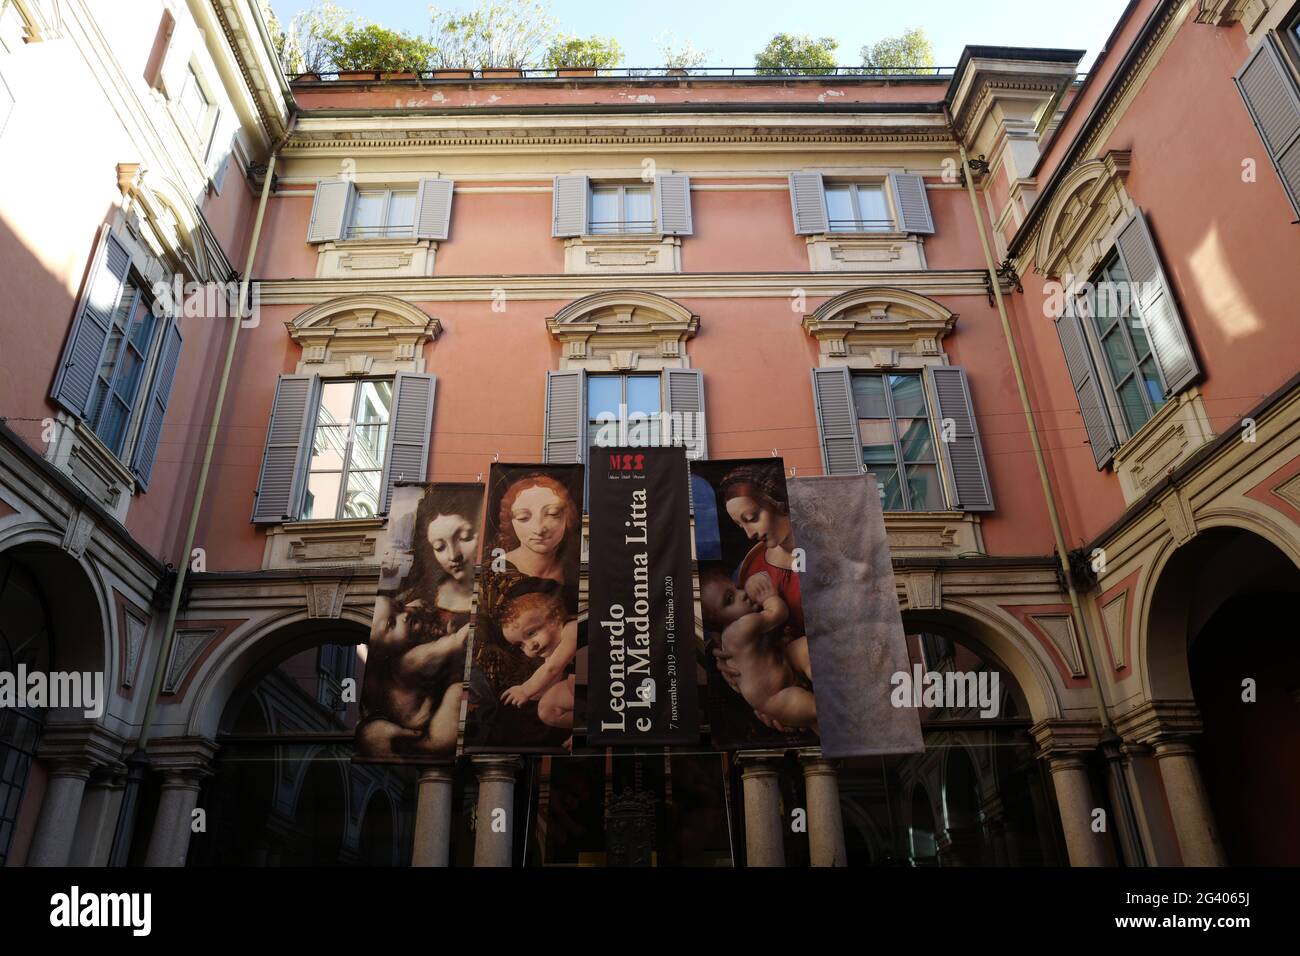 La Madonna Litta, capolavoro di Leonardo da Vinc's i, esposto al museo Poldi Pezzoli di Milano. Italia Foto Stock